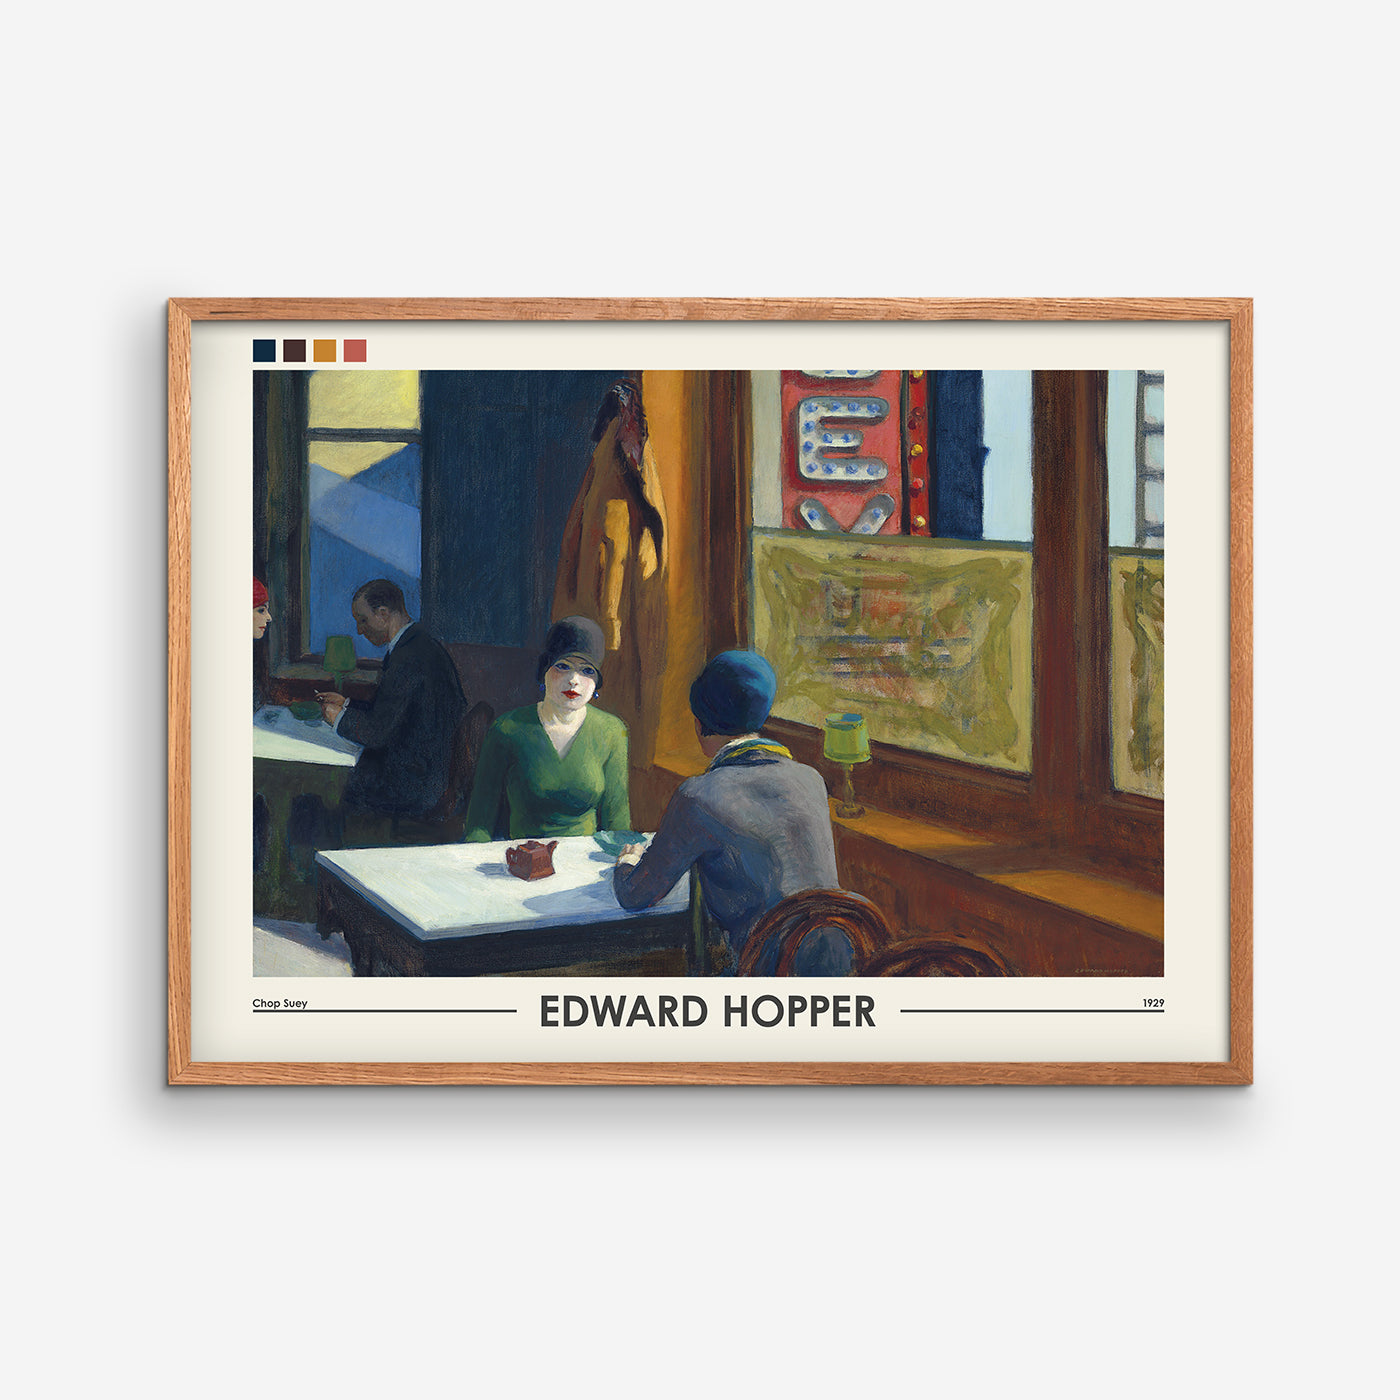 Chop Suey - Edward Hopper